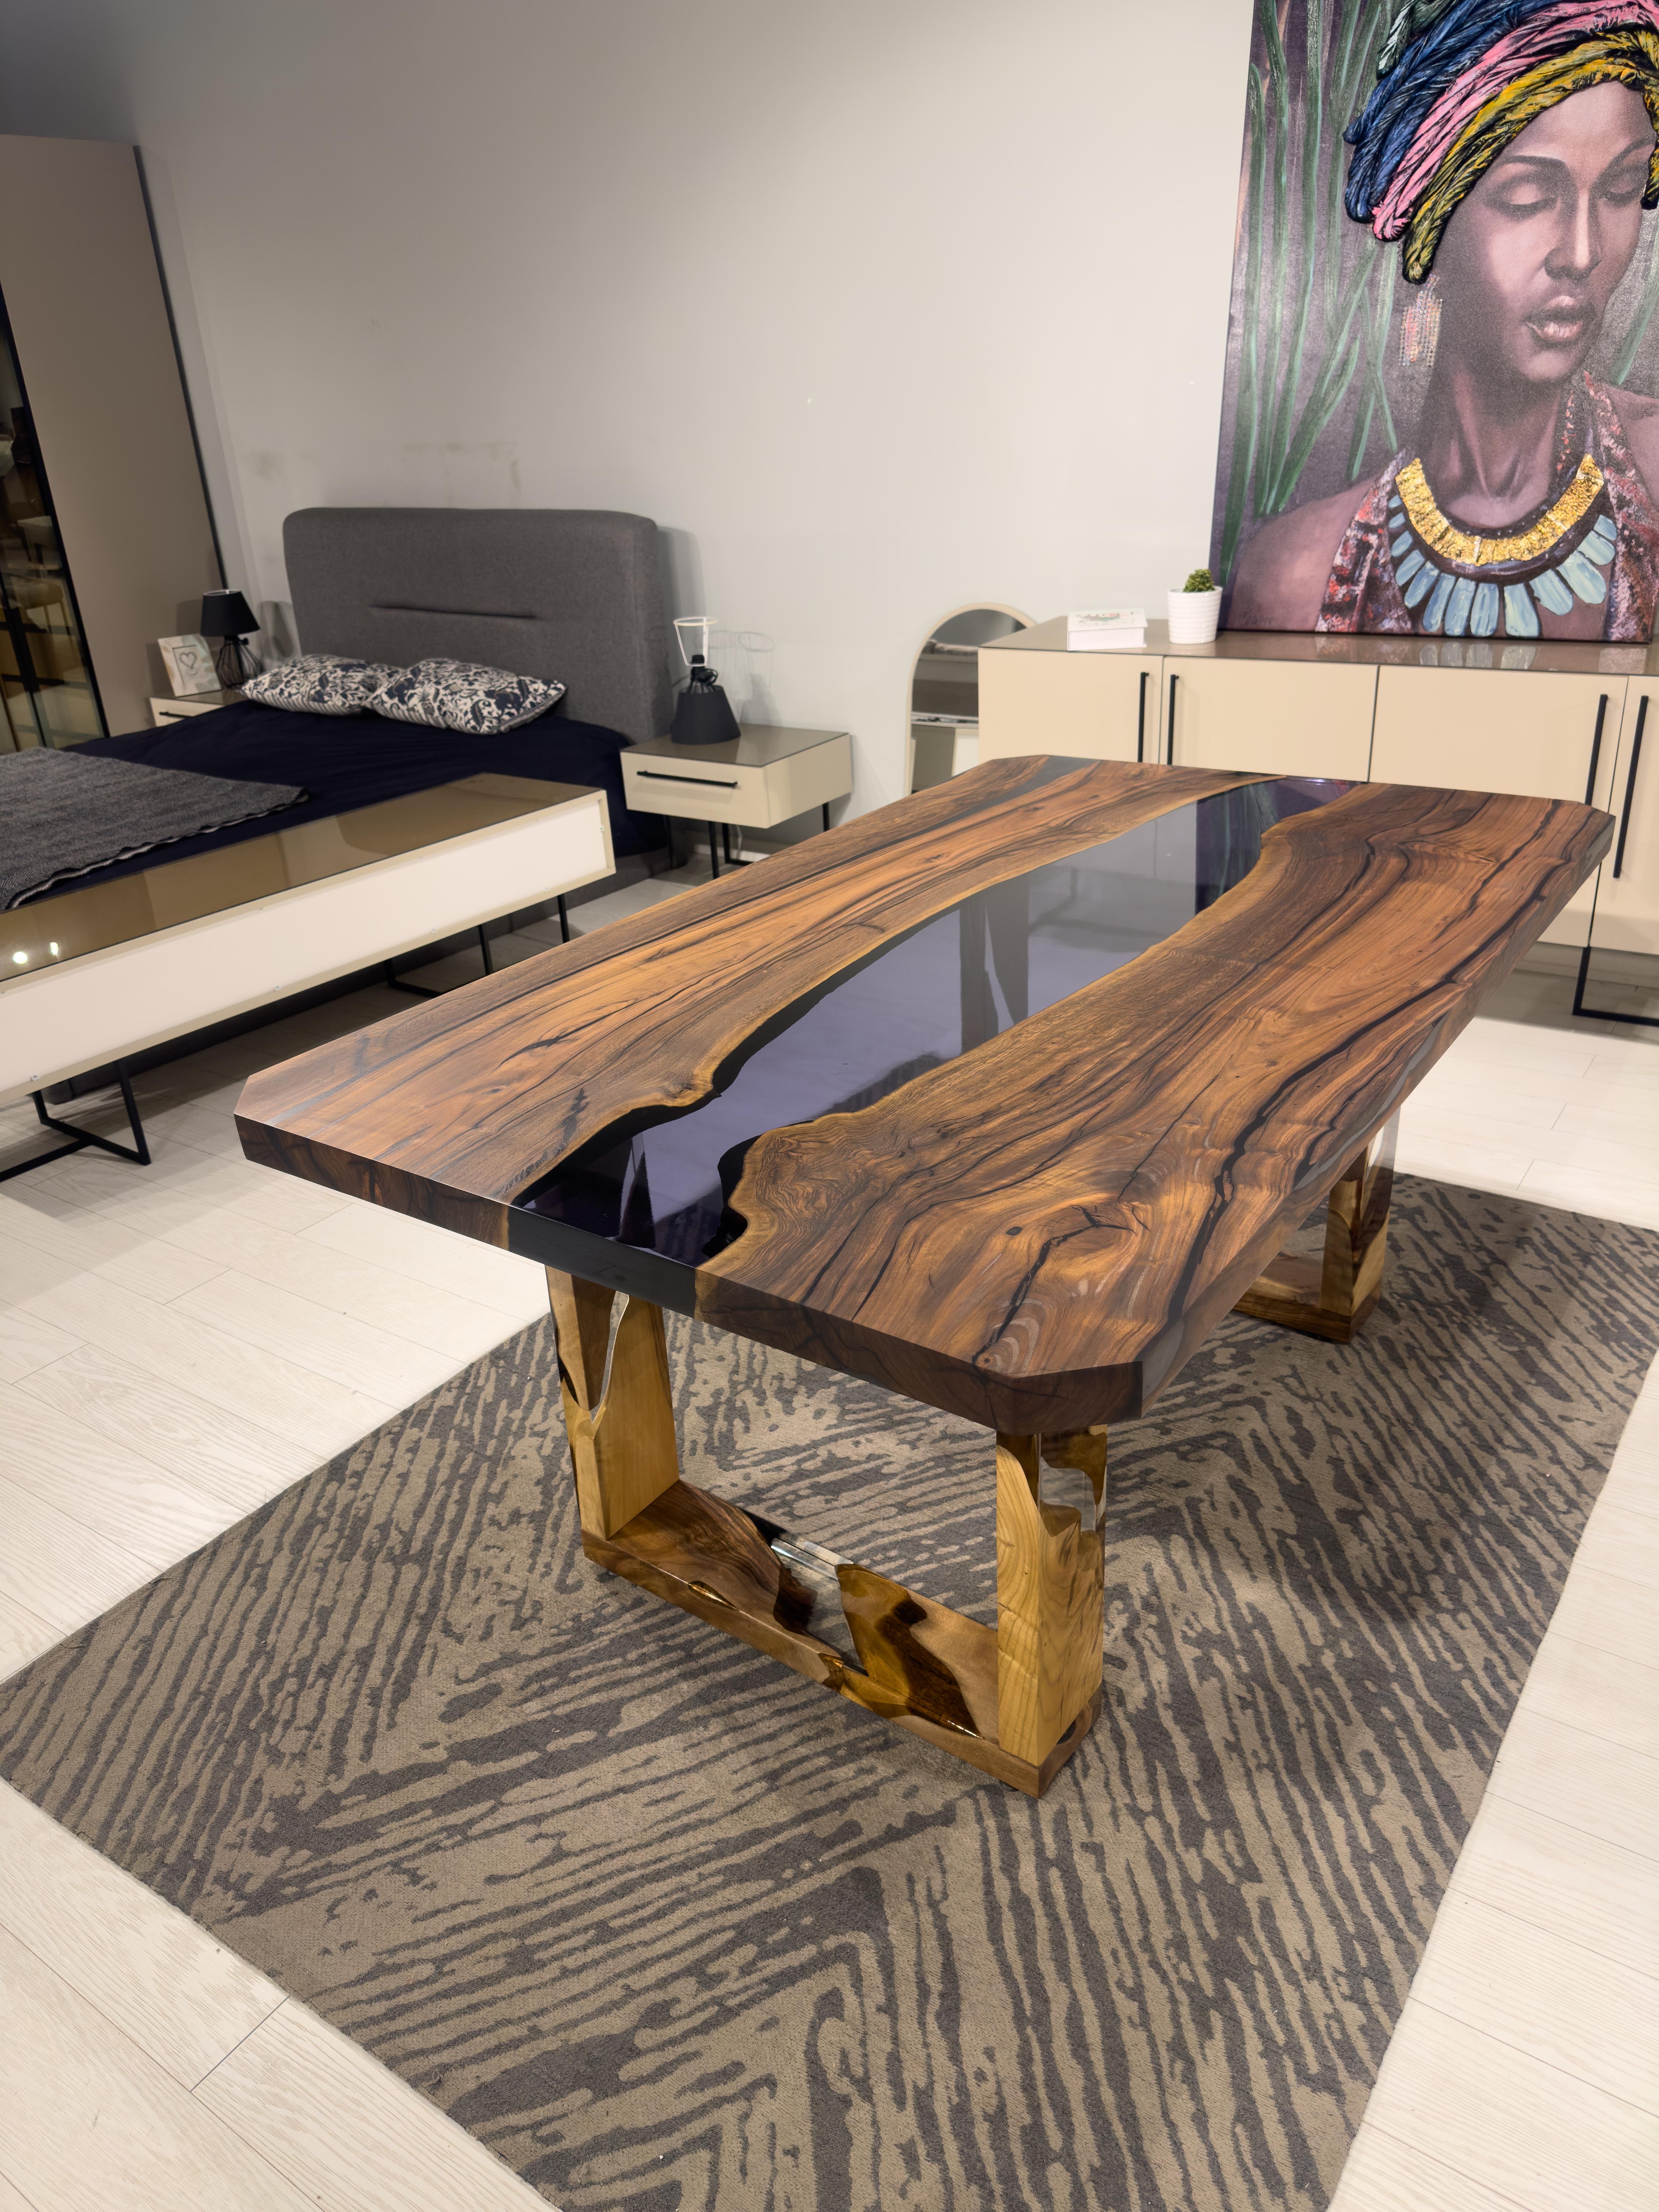 Mesa de madera de nogal y epoxi transparente negro - ¡Tamaños personalizados disponibles!

Esta mesa combina a la perfección la calidez de la madera de nogal con el toque moderno del epoxi transparente. Es un hermoso centro de mesa para cualquier